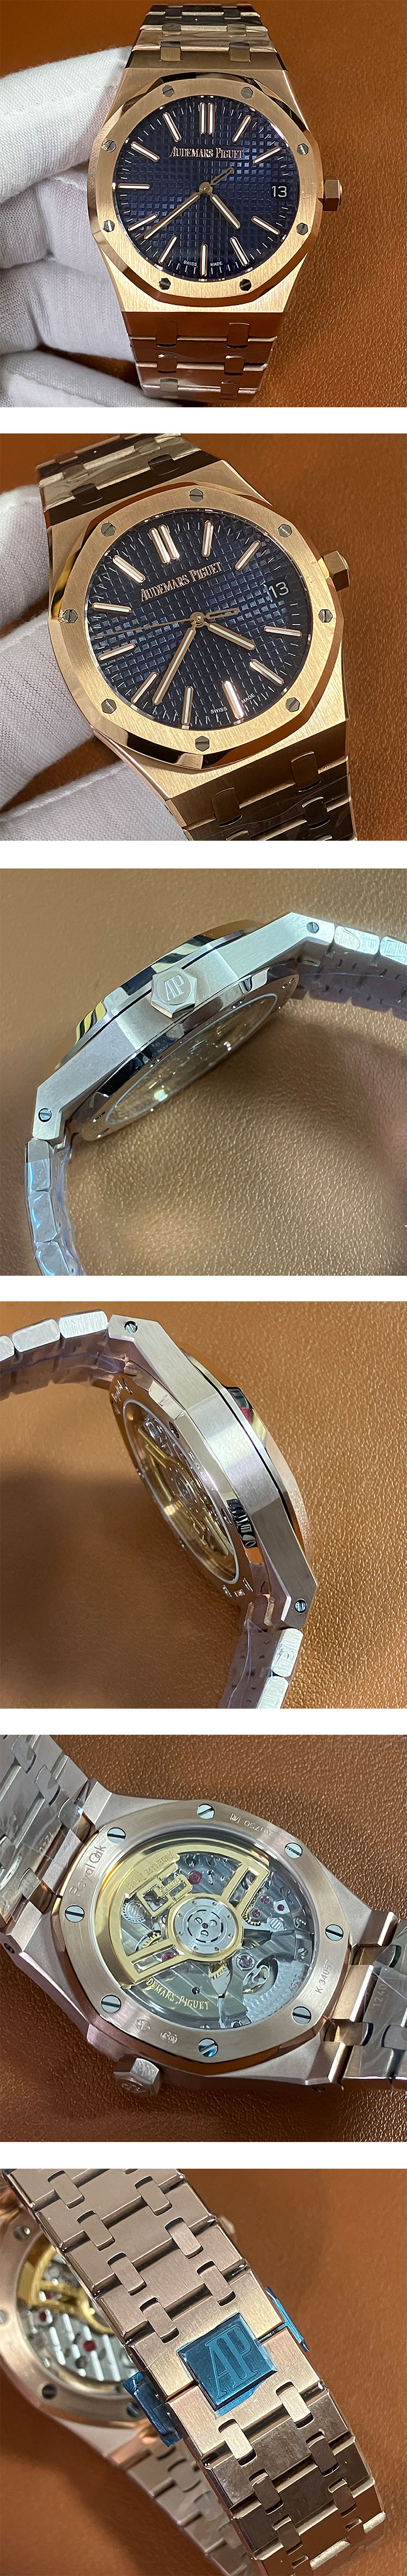 最高級のスーパーコピー時計オーデマピゲ ロイヤルオーク モデル 15510OR.OO.1320OR.01